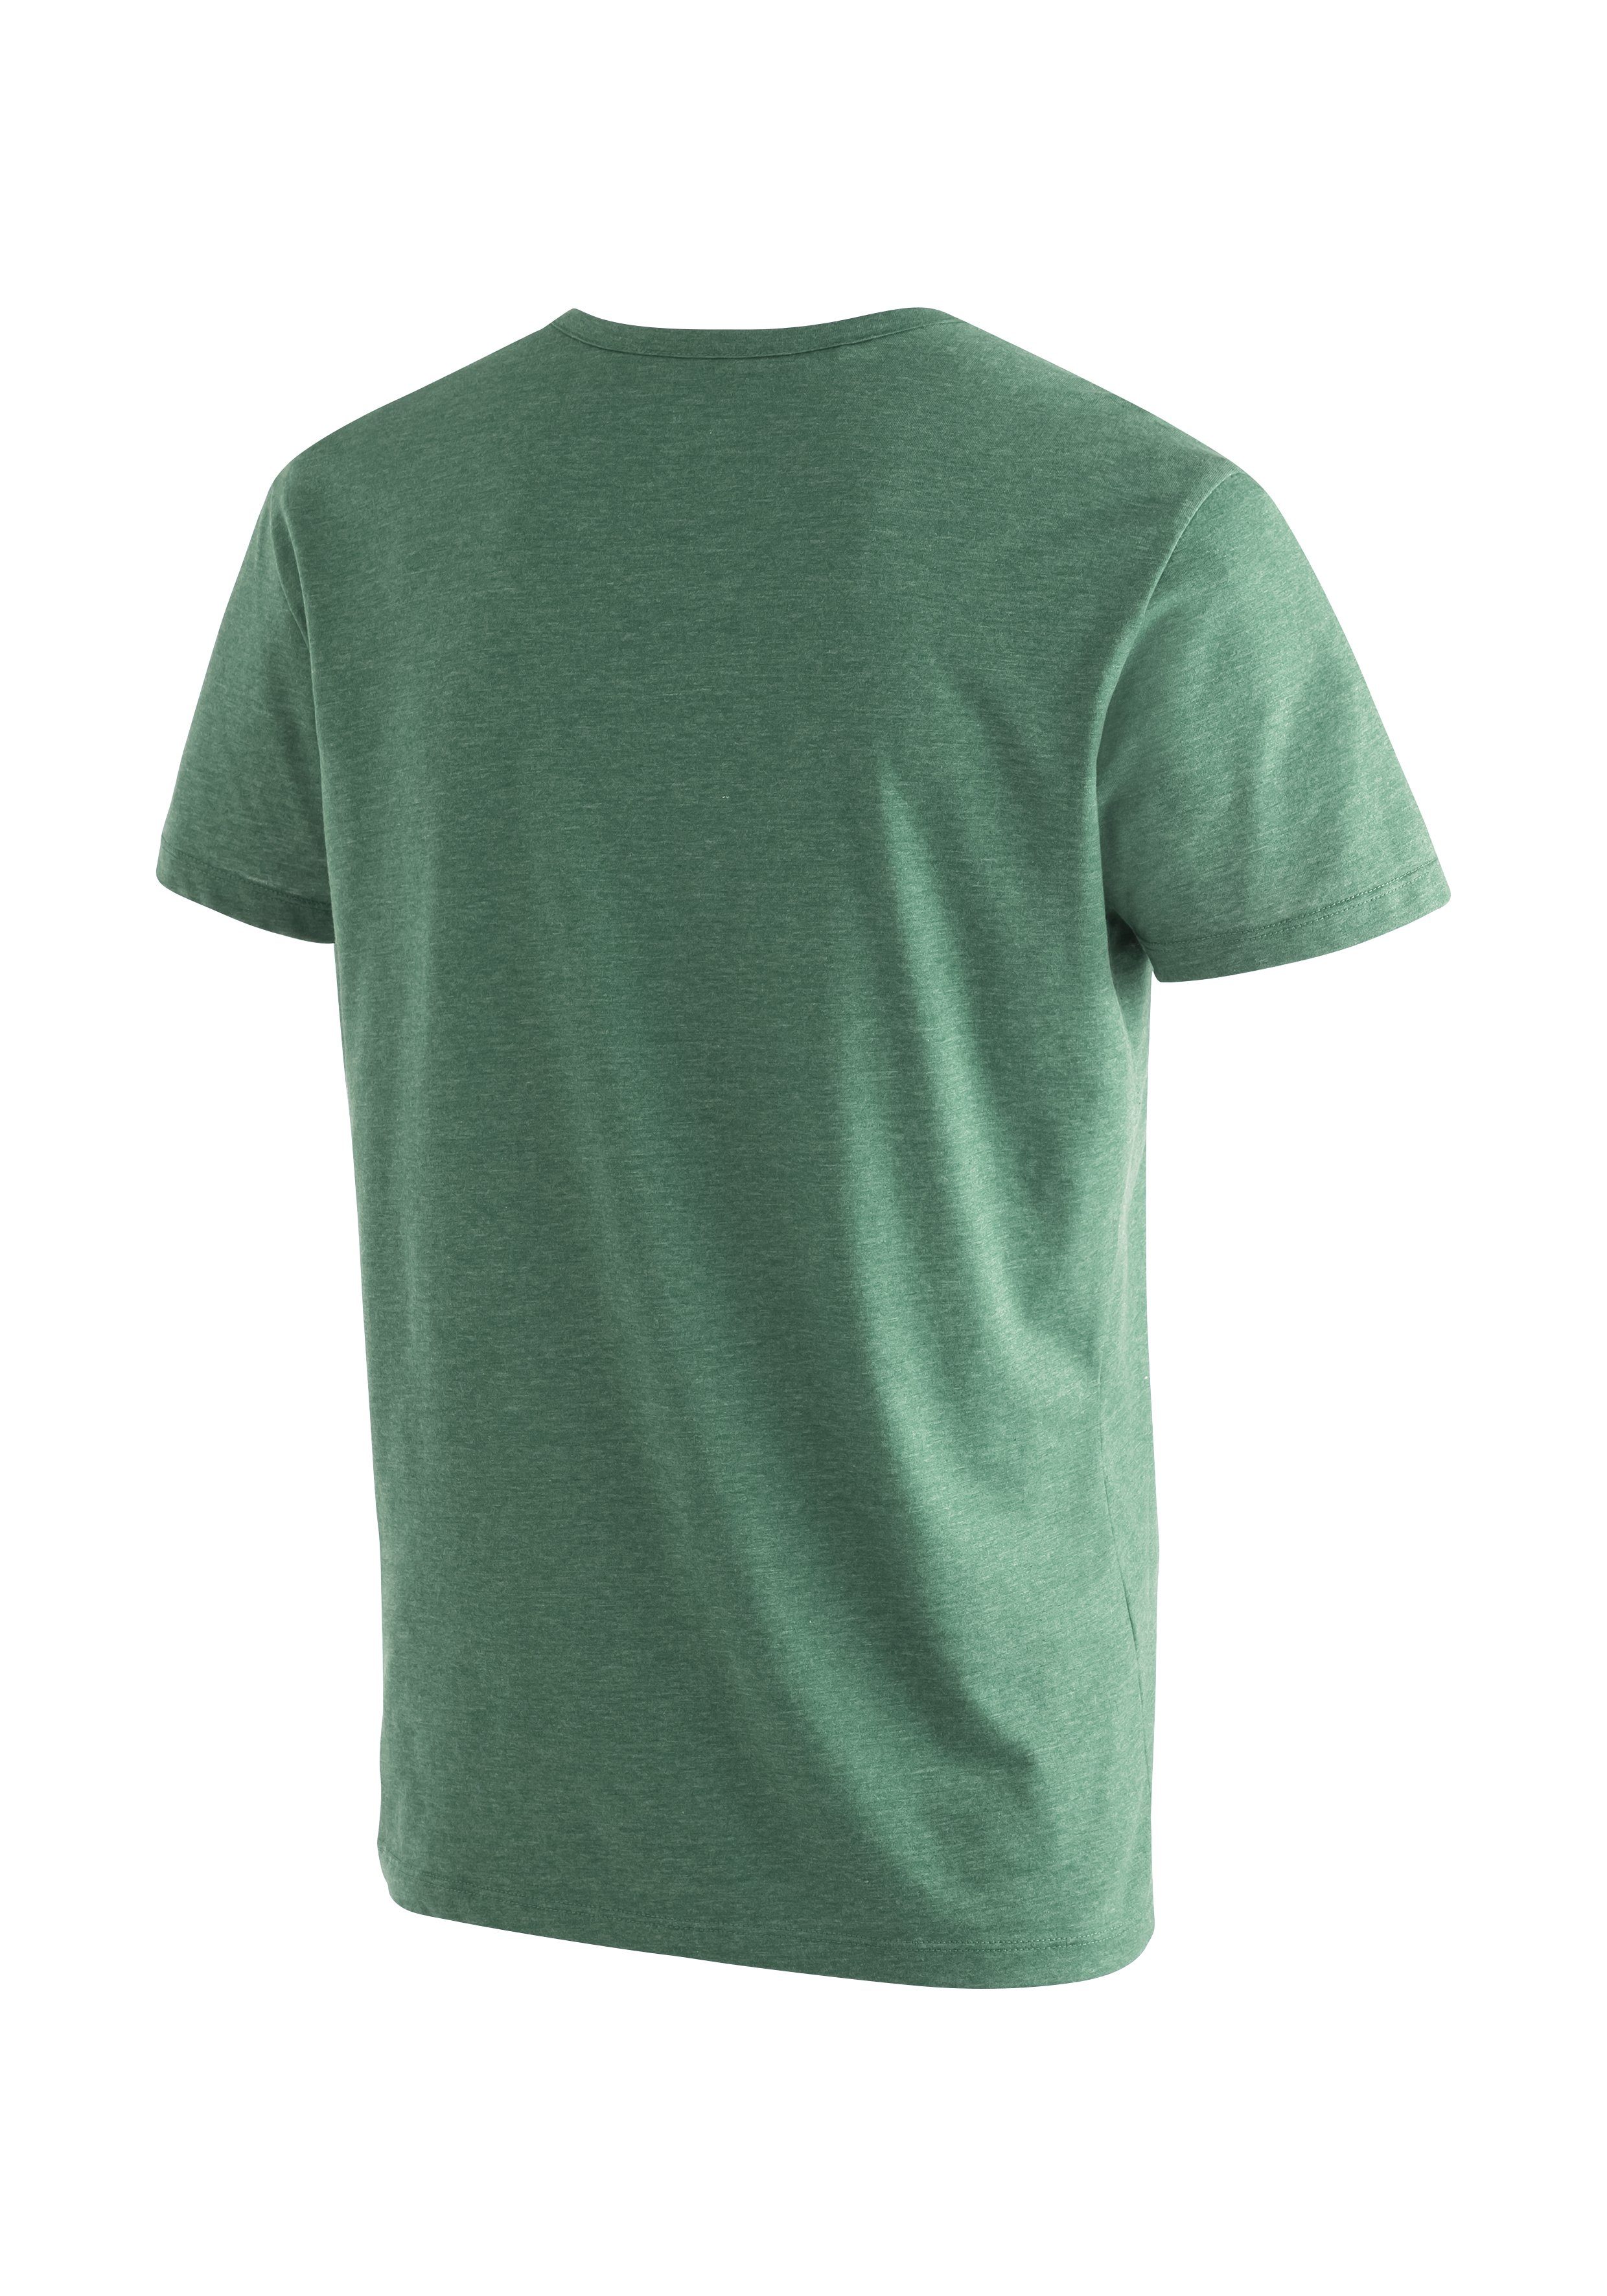 Maier Sports Melange-Optik T-Shirt hellgrün Funktionsshirt Vielseitiges M Break ansprechender Coffee in